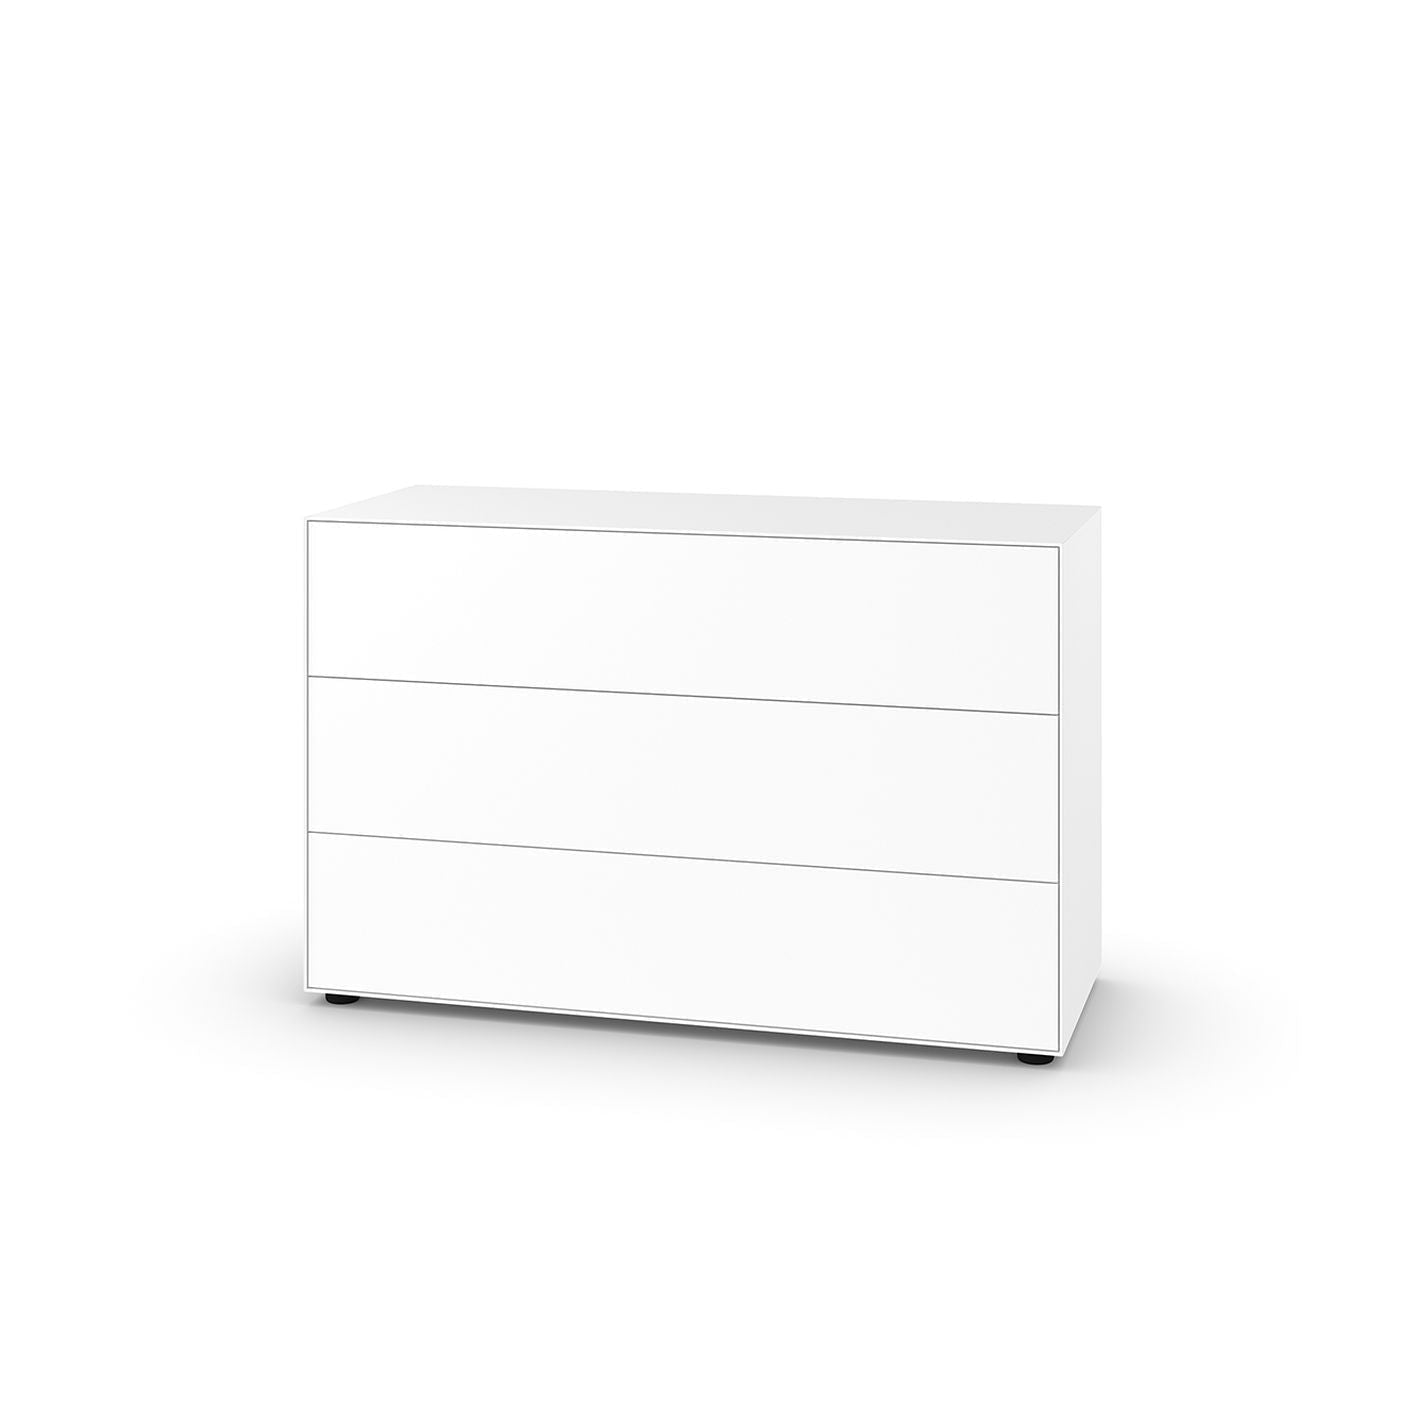 PIURE NEX PUR BOX HX W 75x120 cm，3个抽屉，白色